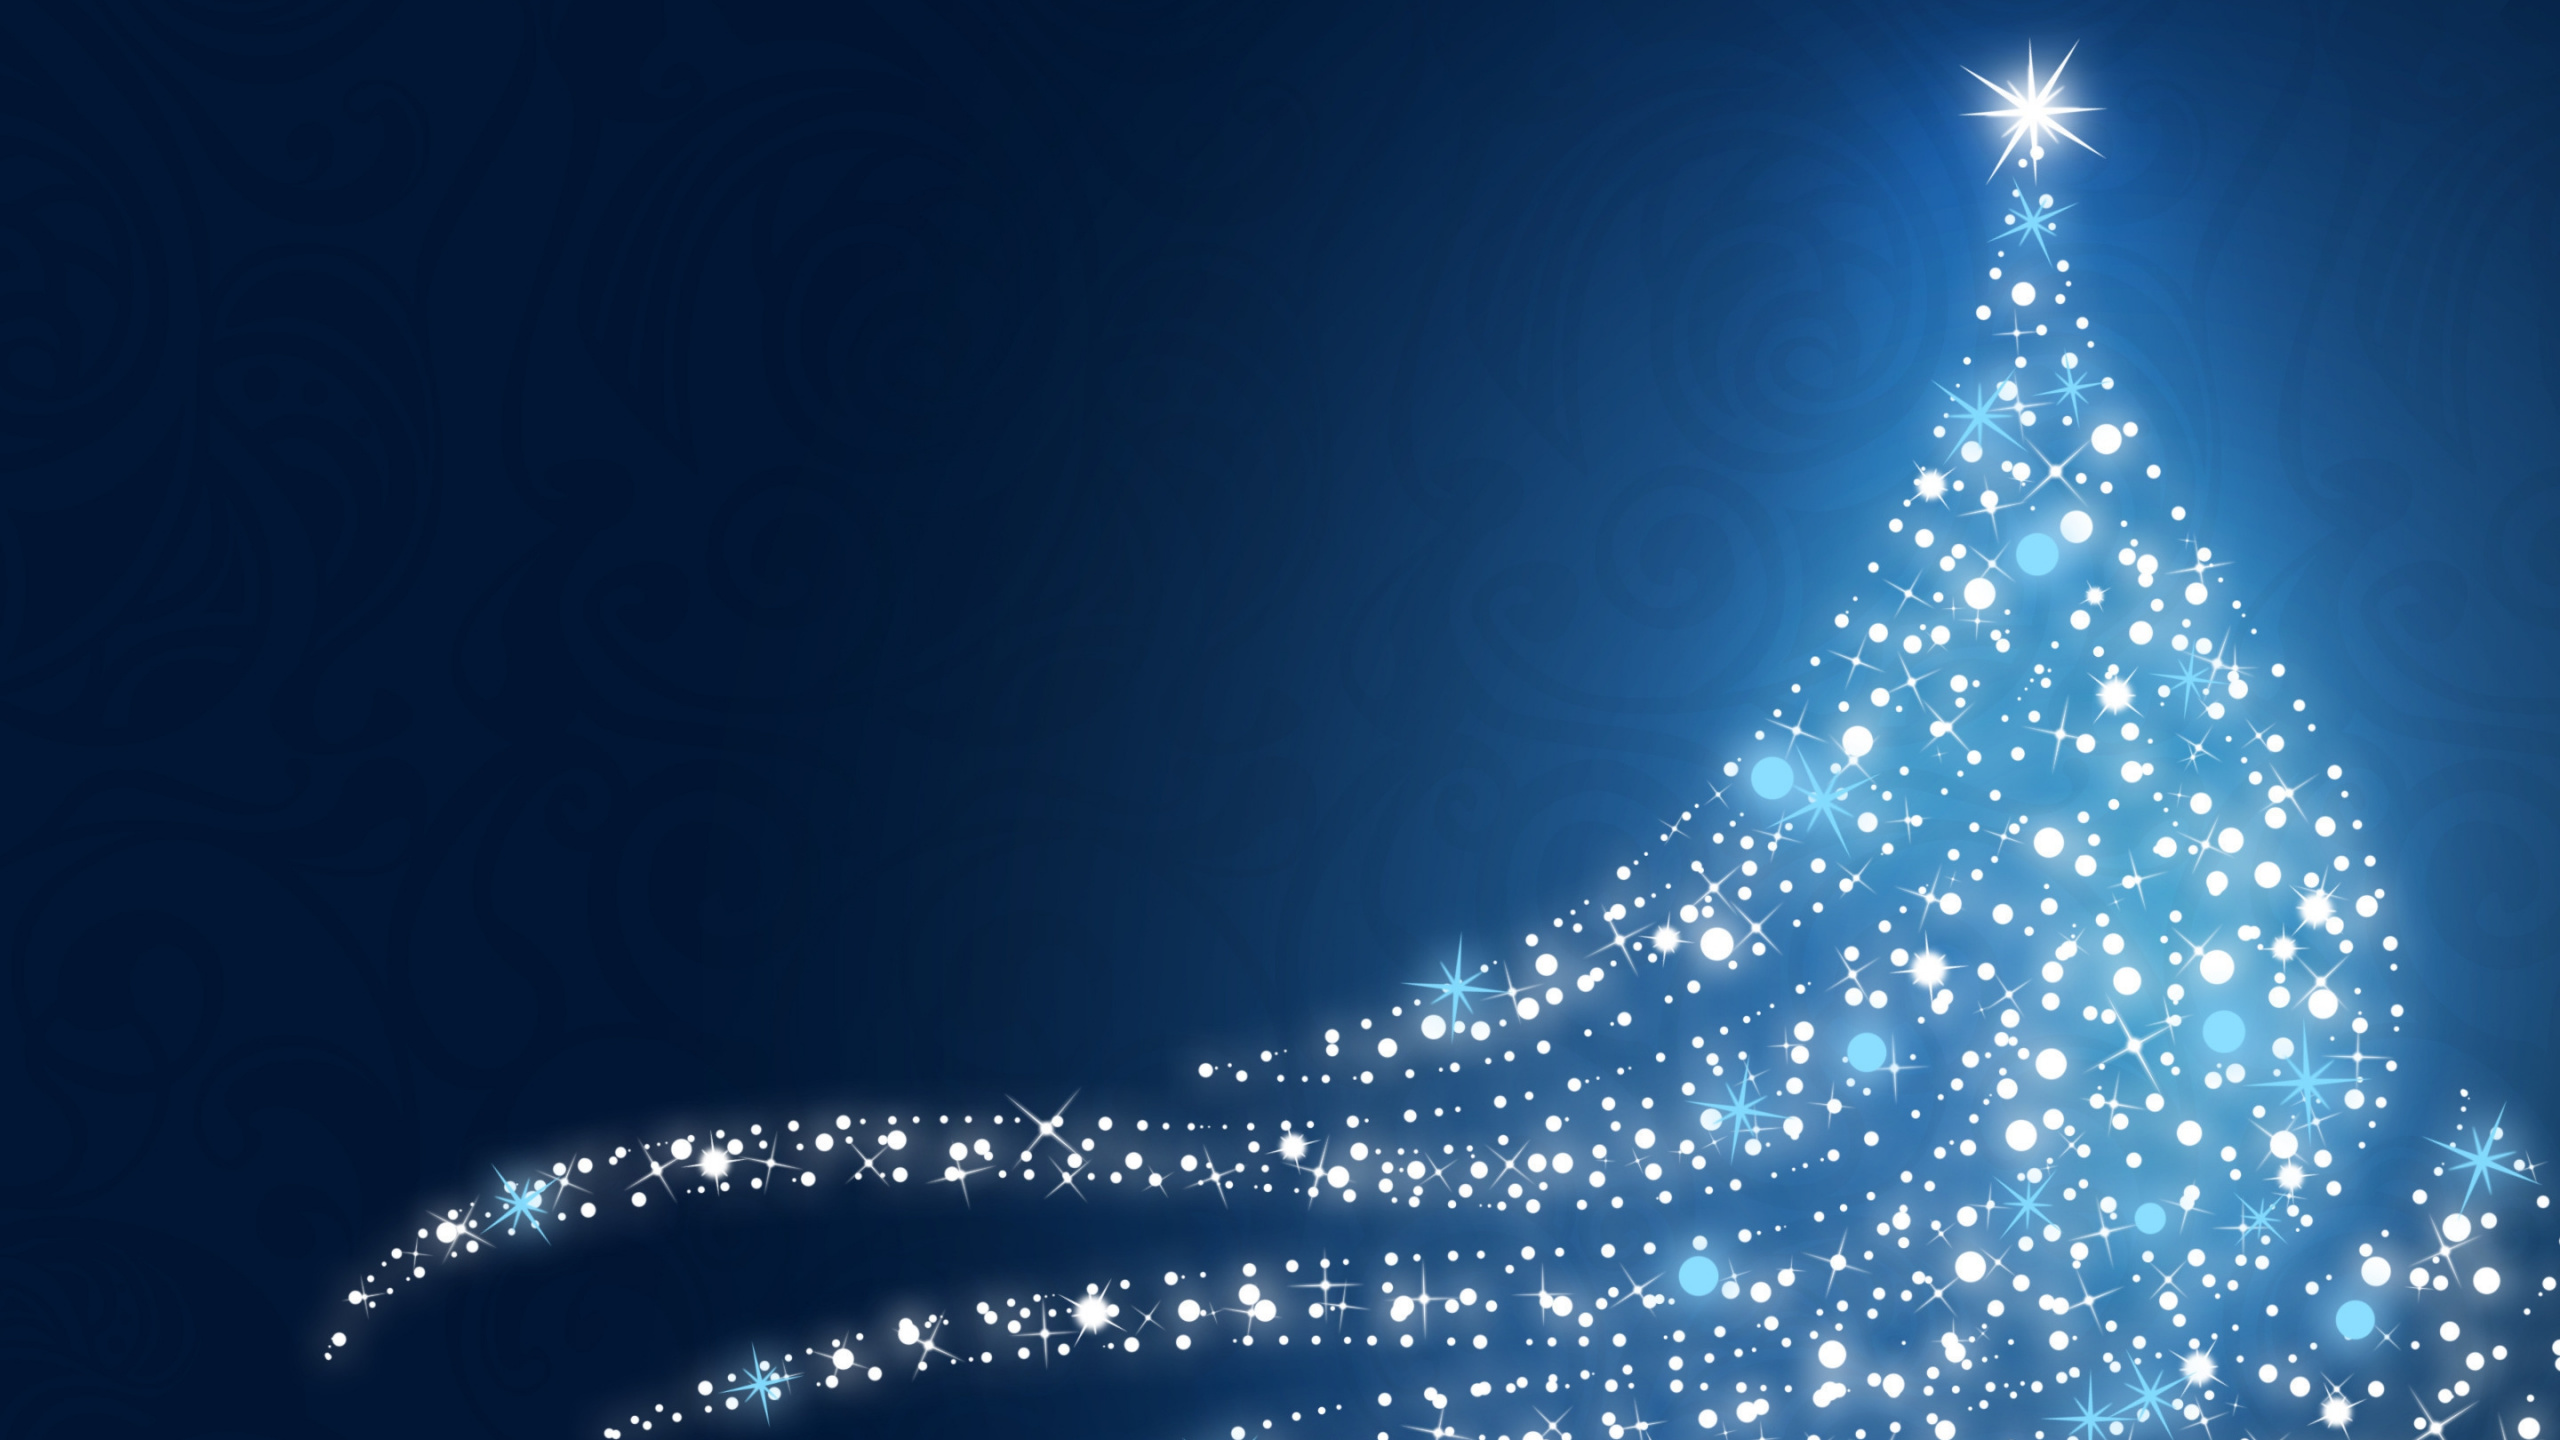 Weihnachten, Blau, Weihnachtsbaum, Weihnachtsdekoration, Baum. Wallpaper in 2560x1440 Resolution